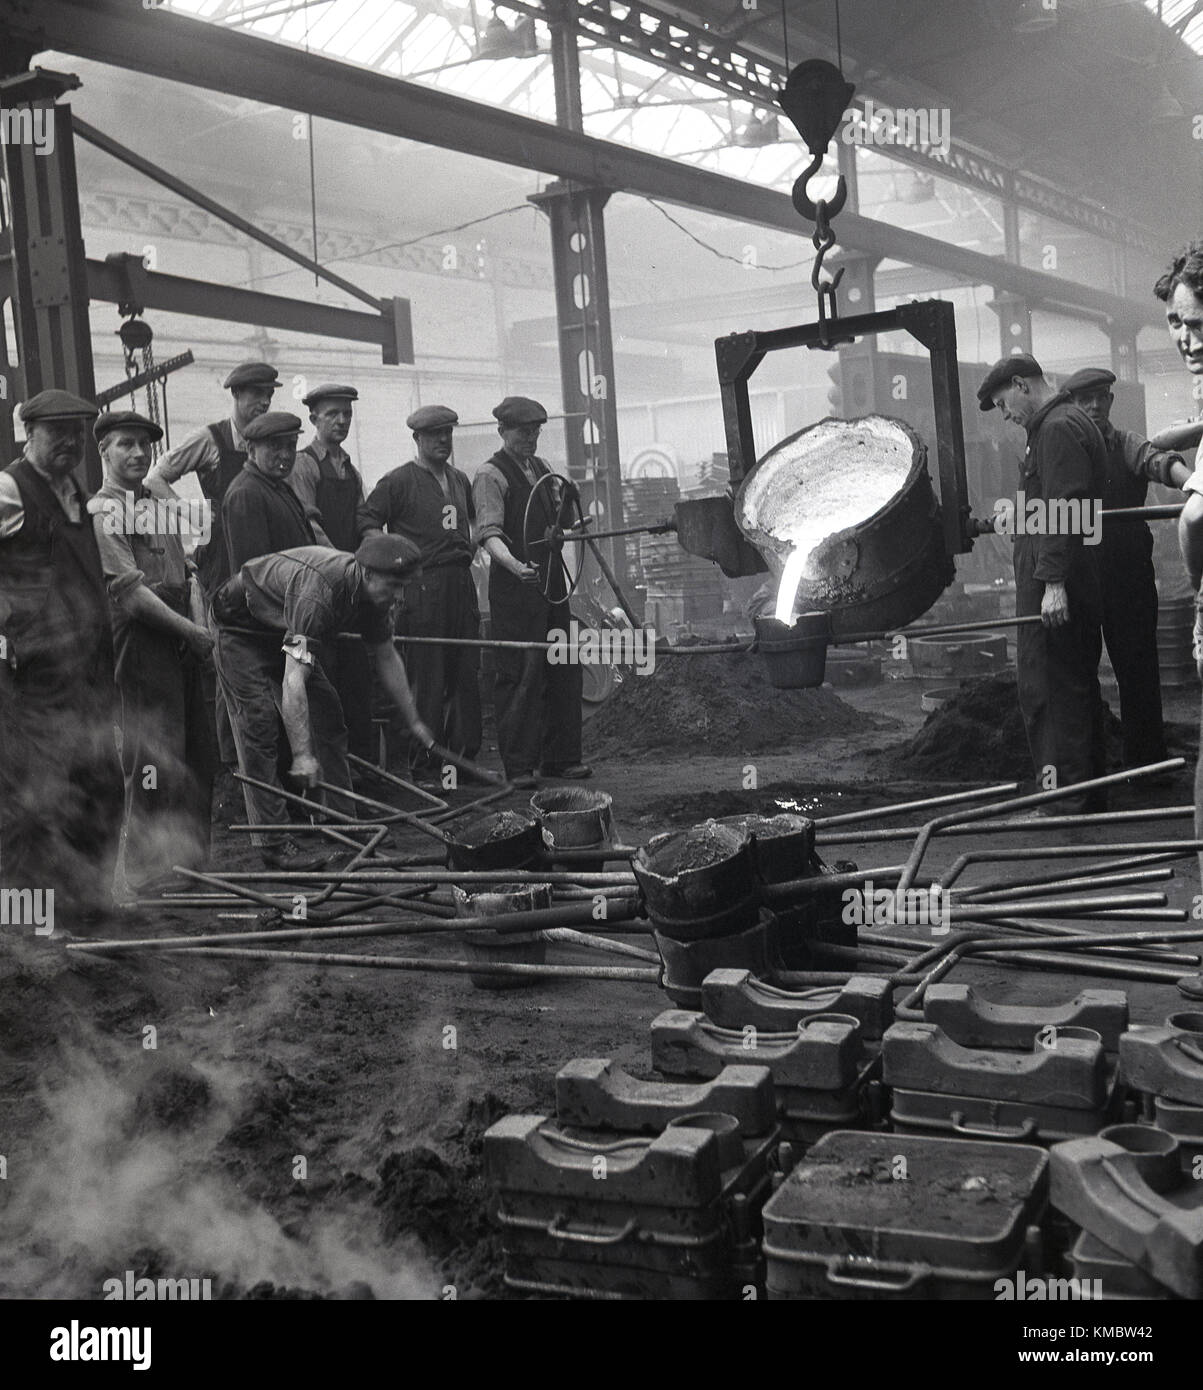 1950, historische, Schiffbau.... eine kleine Gruppe der männlichen Beschäftigten sammeln aound eine Eisen- und Stahlerzeugung geschmolzenen Ofen oder tiegel am Harland und Wolff Werft in Belfast, Nordirland. Beachten Sie, dass Tuch Kappen waren, was diese Zeit getragen wurde, nicht schwer hüten! Stockfoto